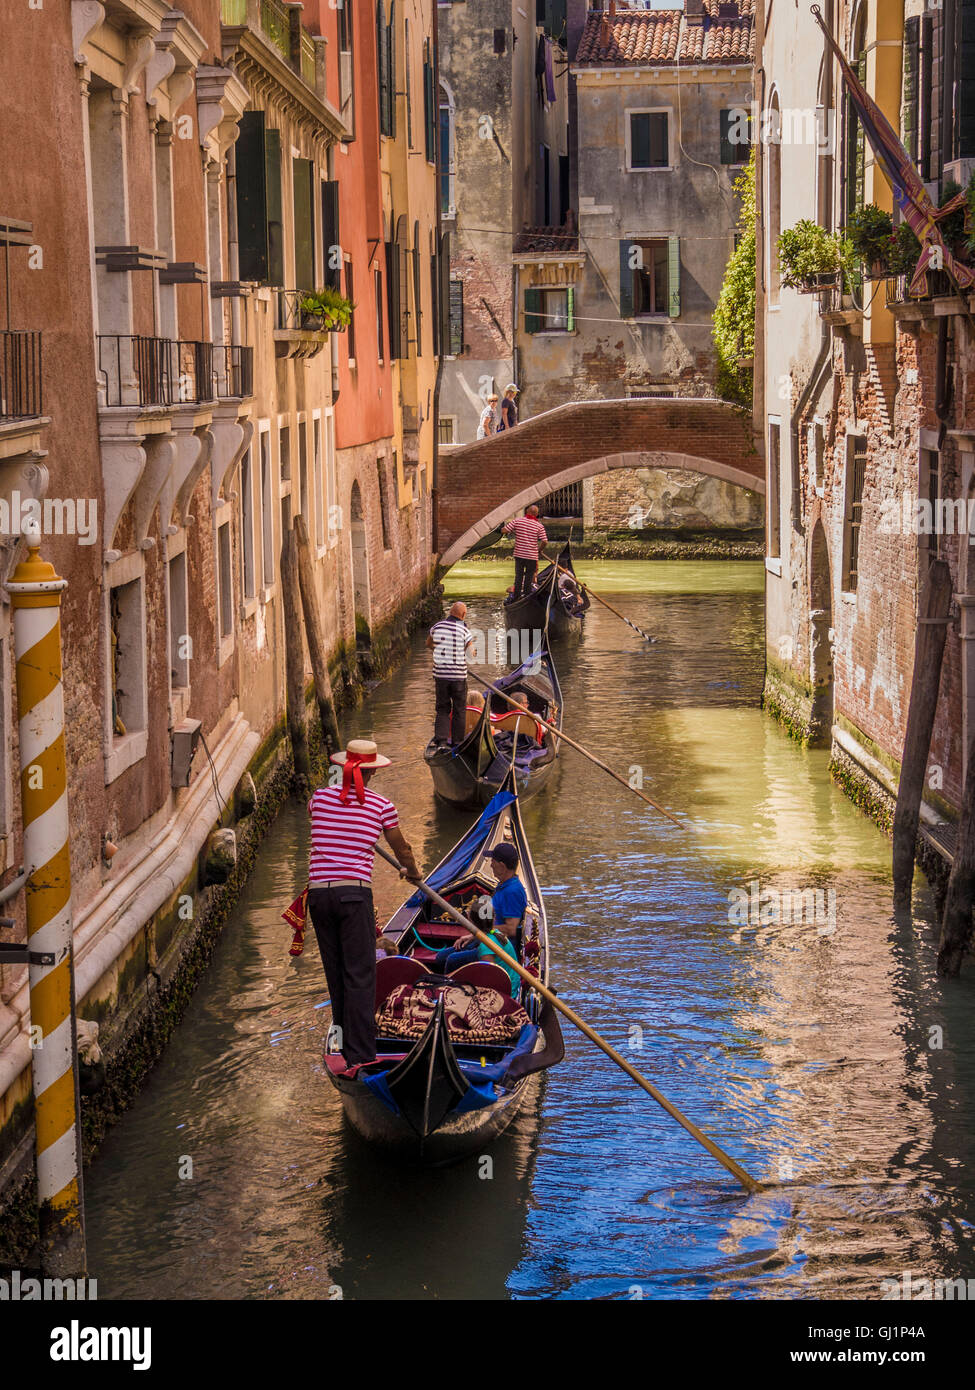 Gondoliere tragen traditionelle gestreiften Oberteil und Strohhut Hut Lenkung seine Gondel an einem Kanal hinter 2 andere Gondeln. Venedig Stockfoto